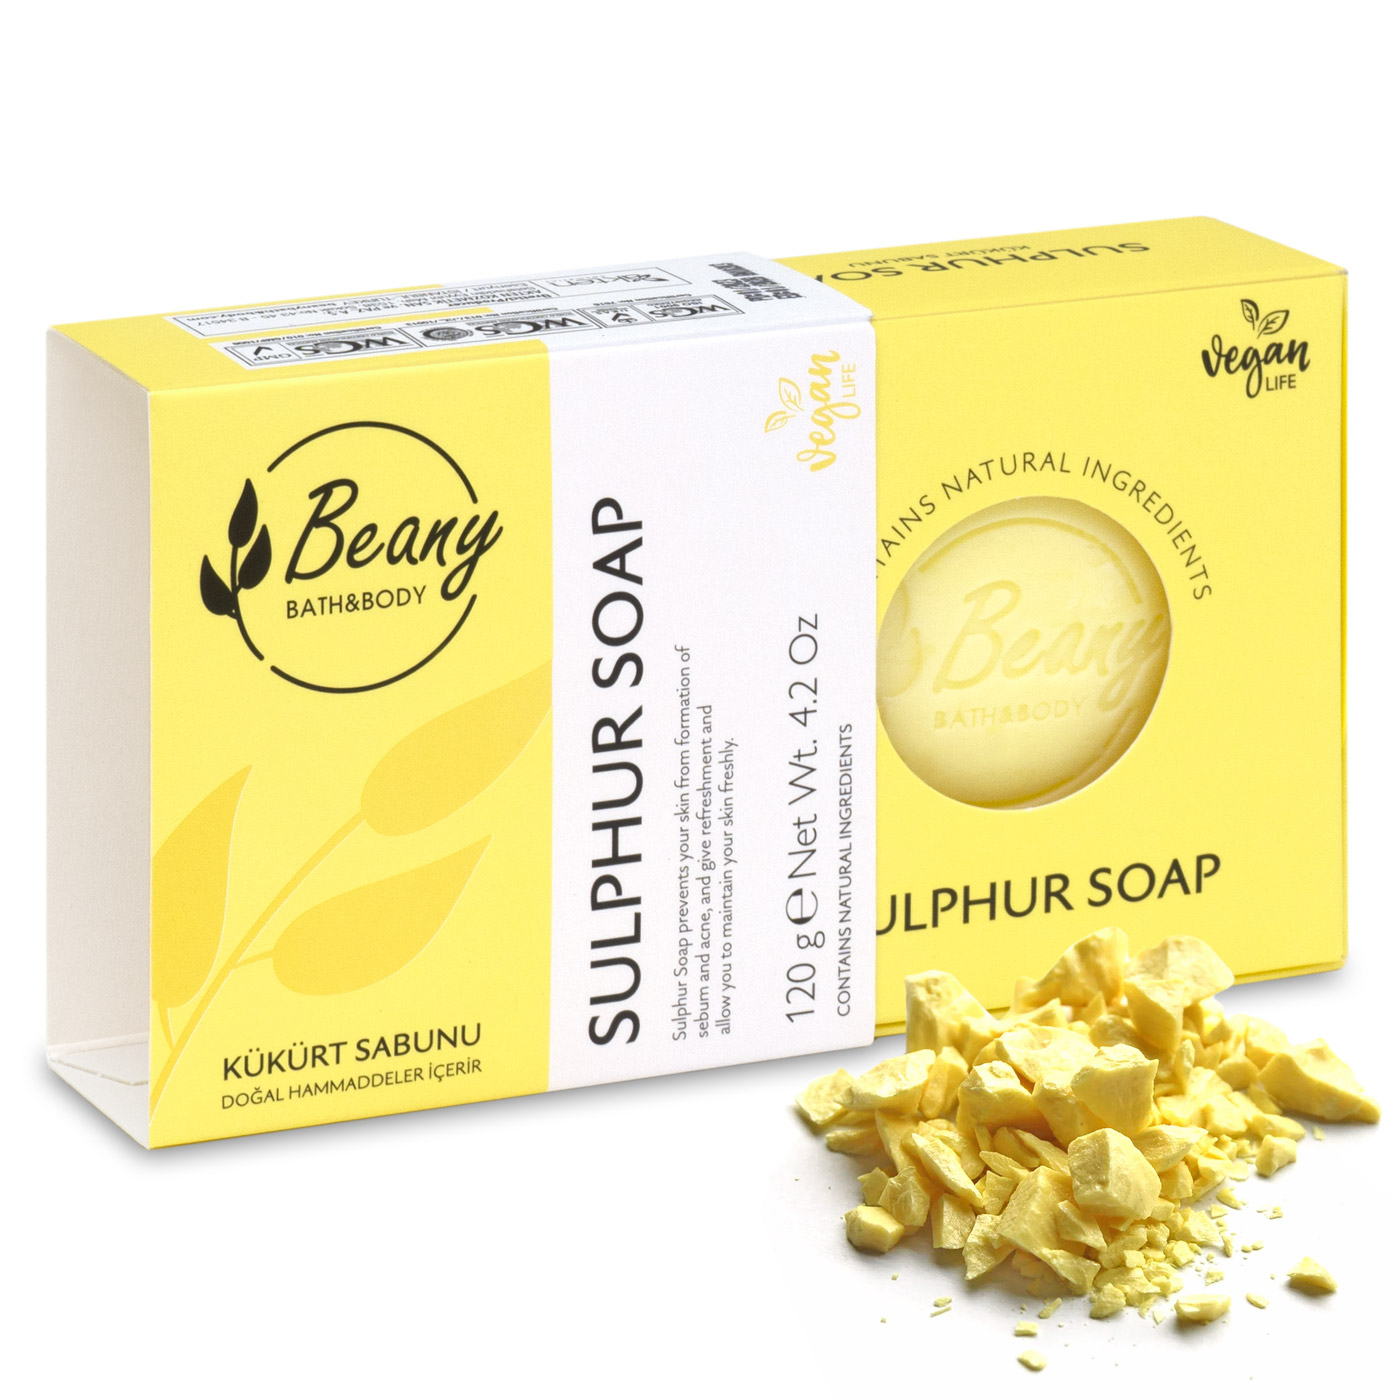 Мыло Beany твердое натуральное турецкое Sulphur Soap серное мыло beany твердое натуральное турецкое sulphur soap серное 2шт х 120г